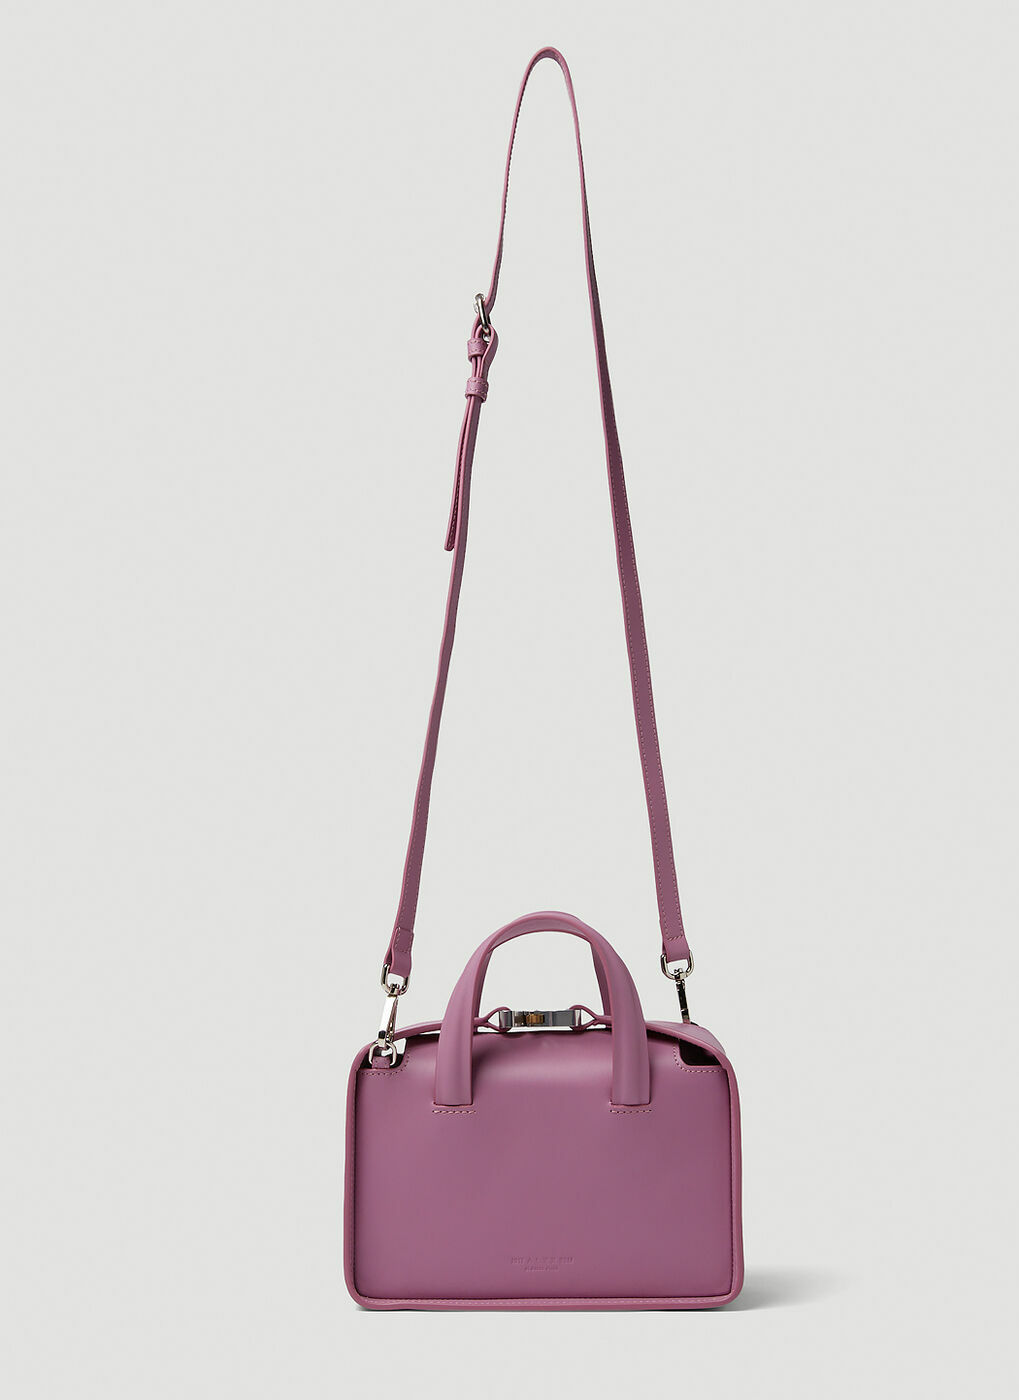 Brie Handbag in Pink